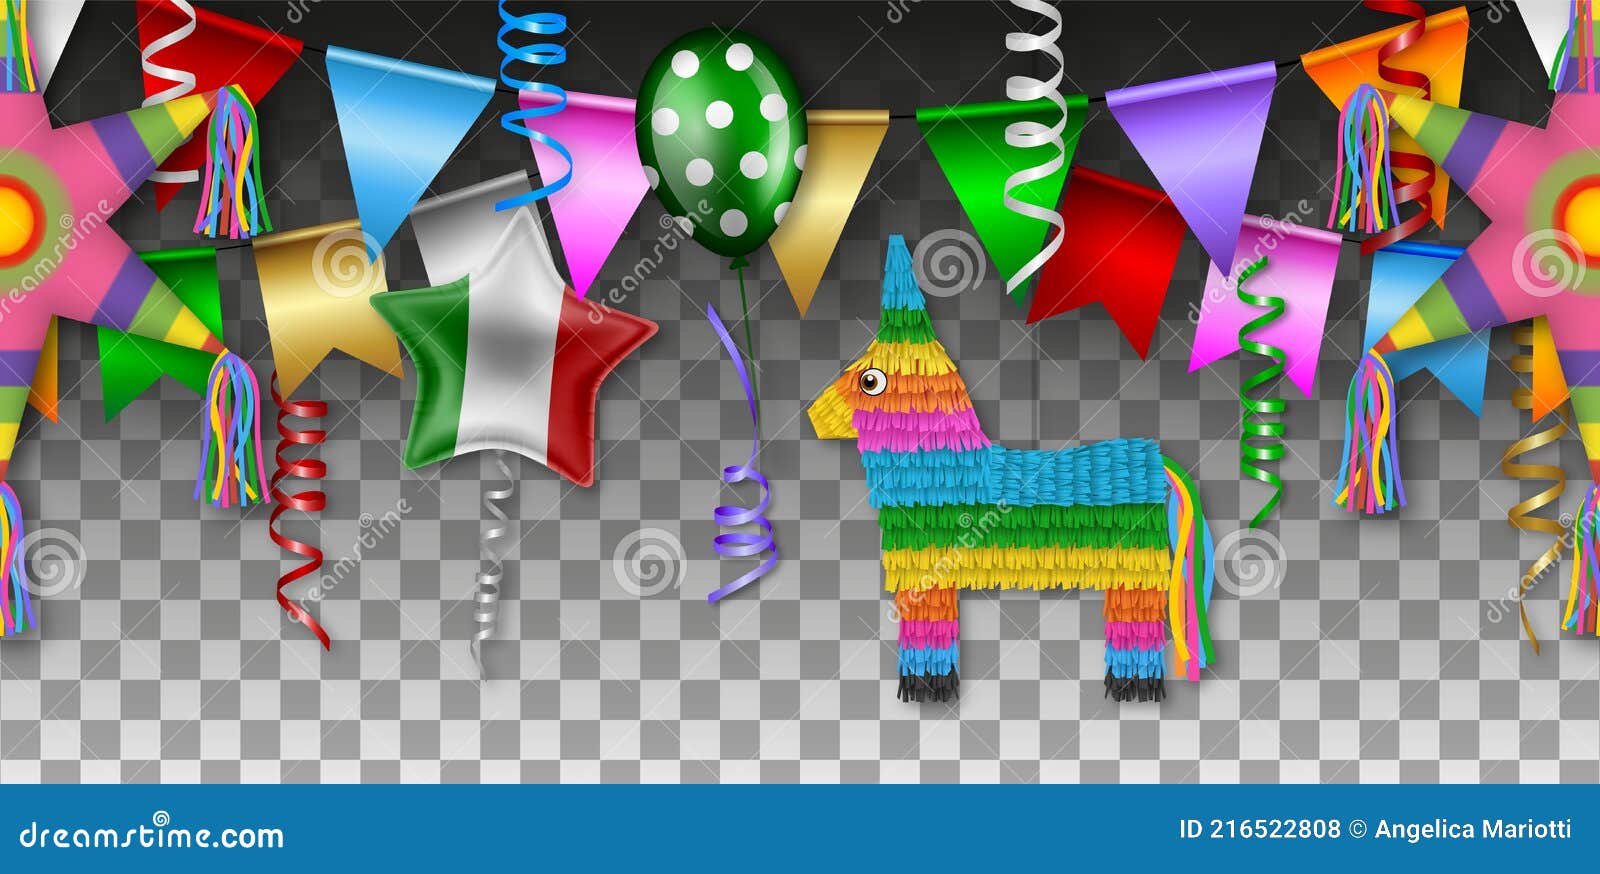 Pinata decorazioni per feste bambini messicani Pinatas Fiesta